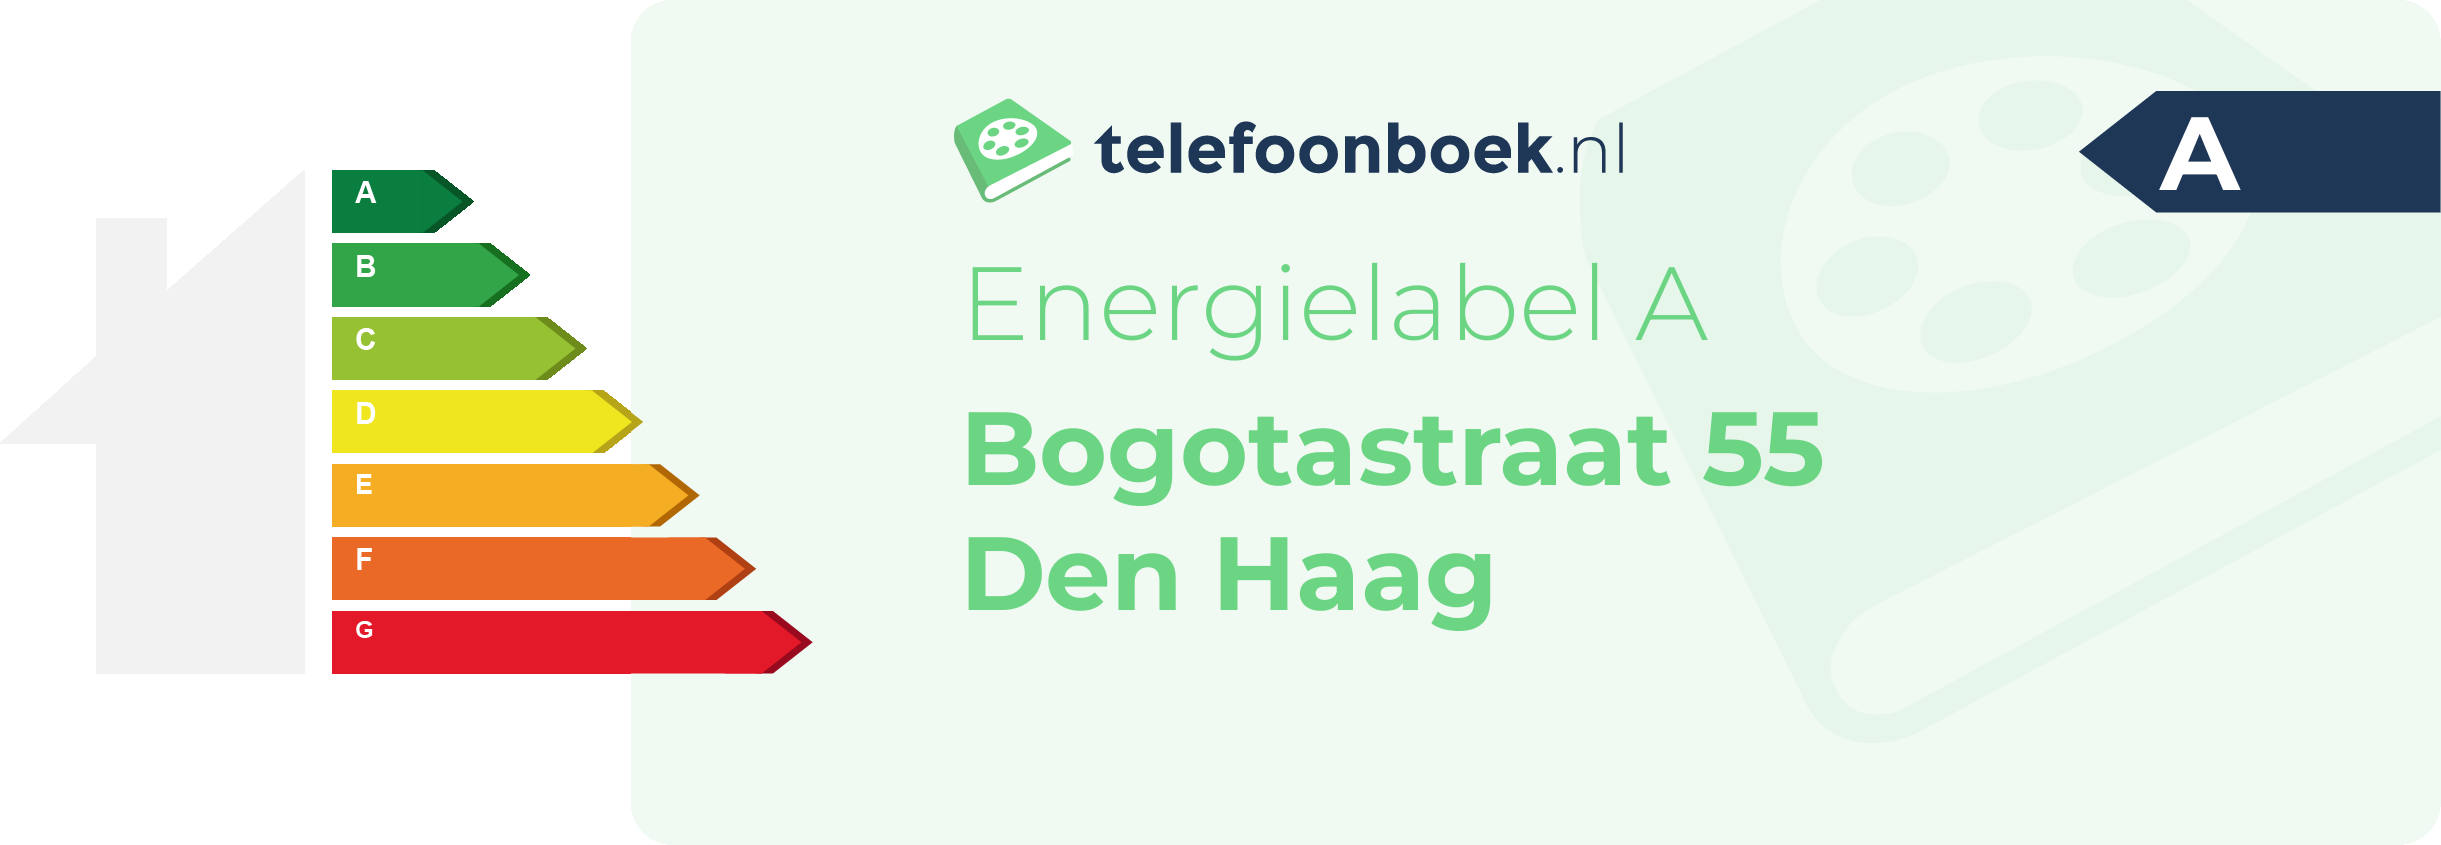 Energielabel Bogotastraat 55 Den Haag